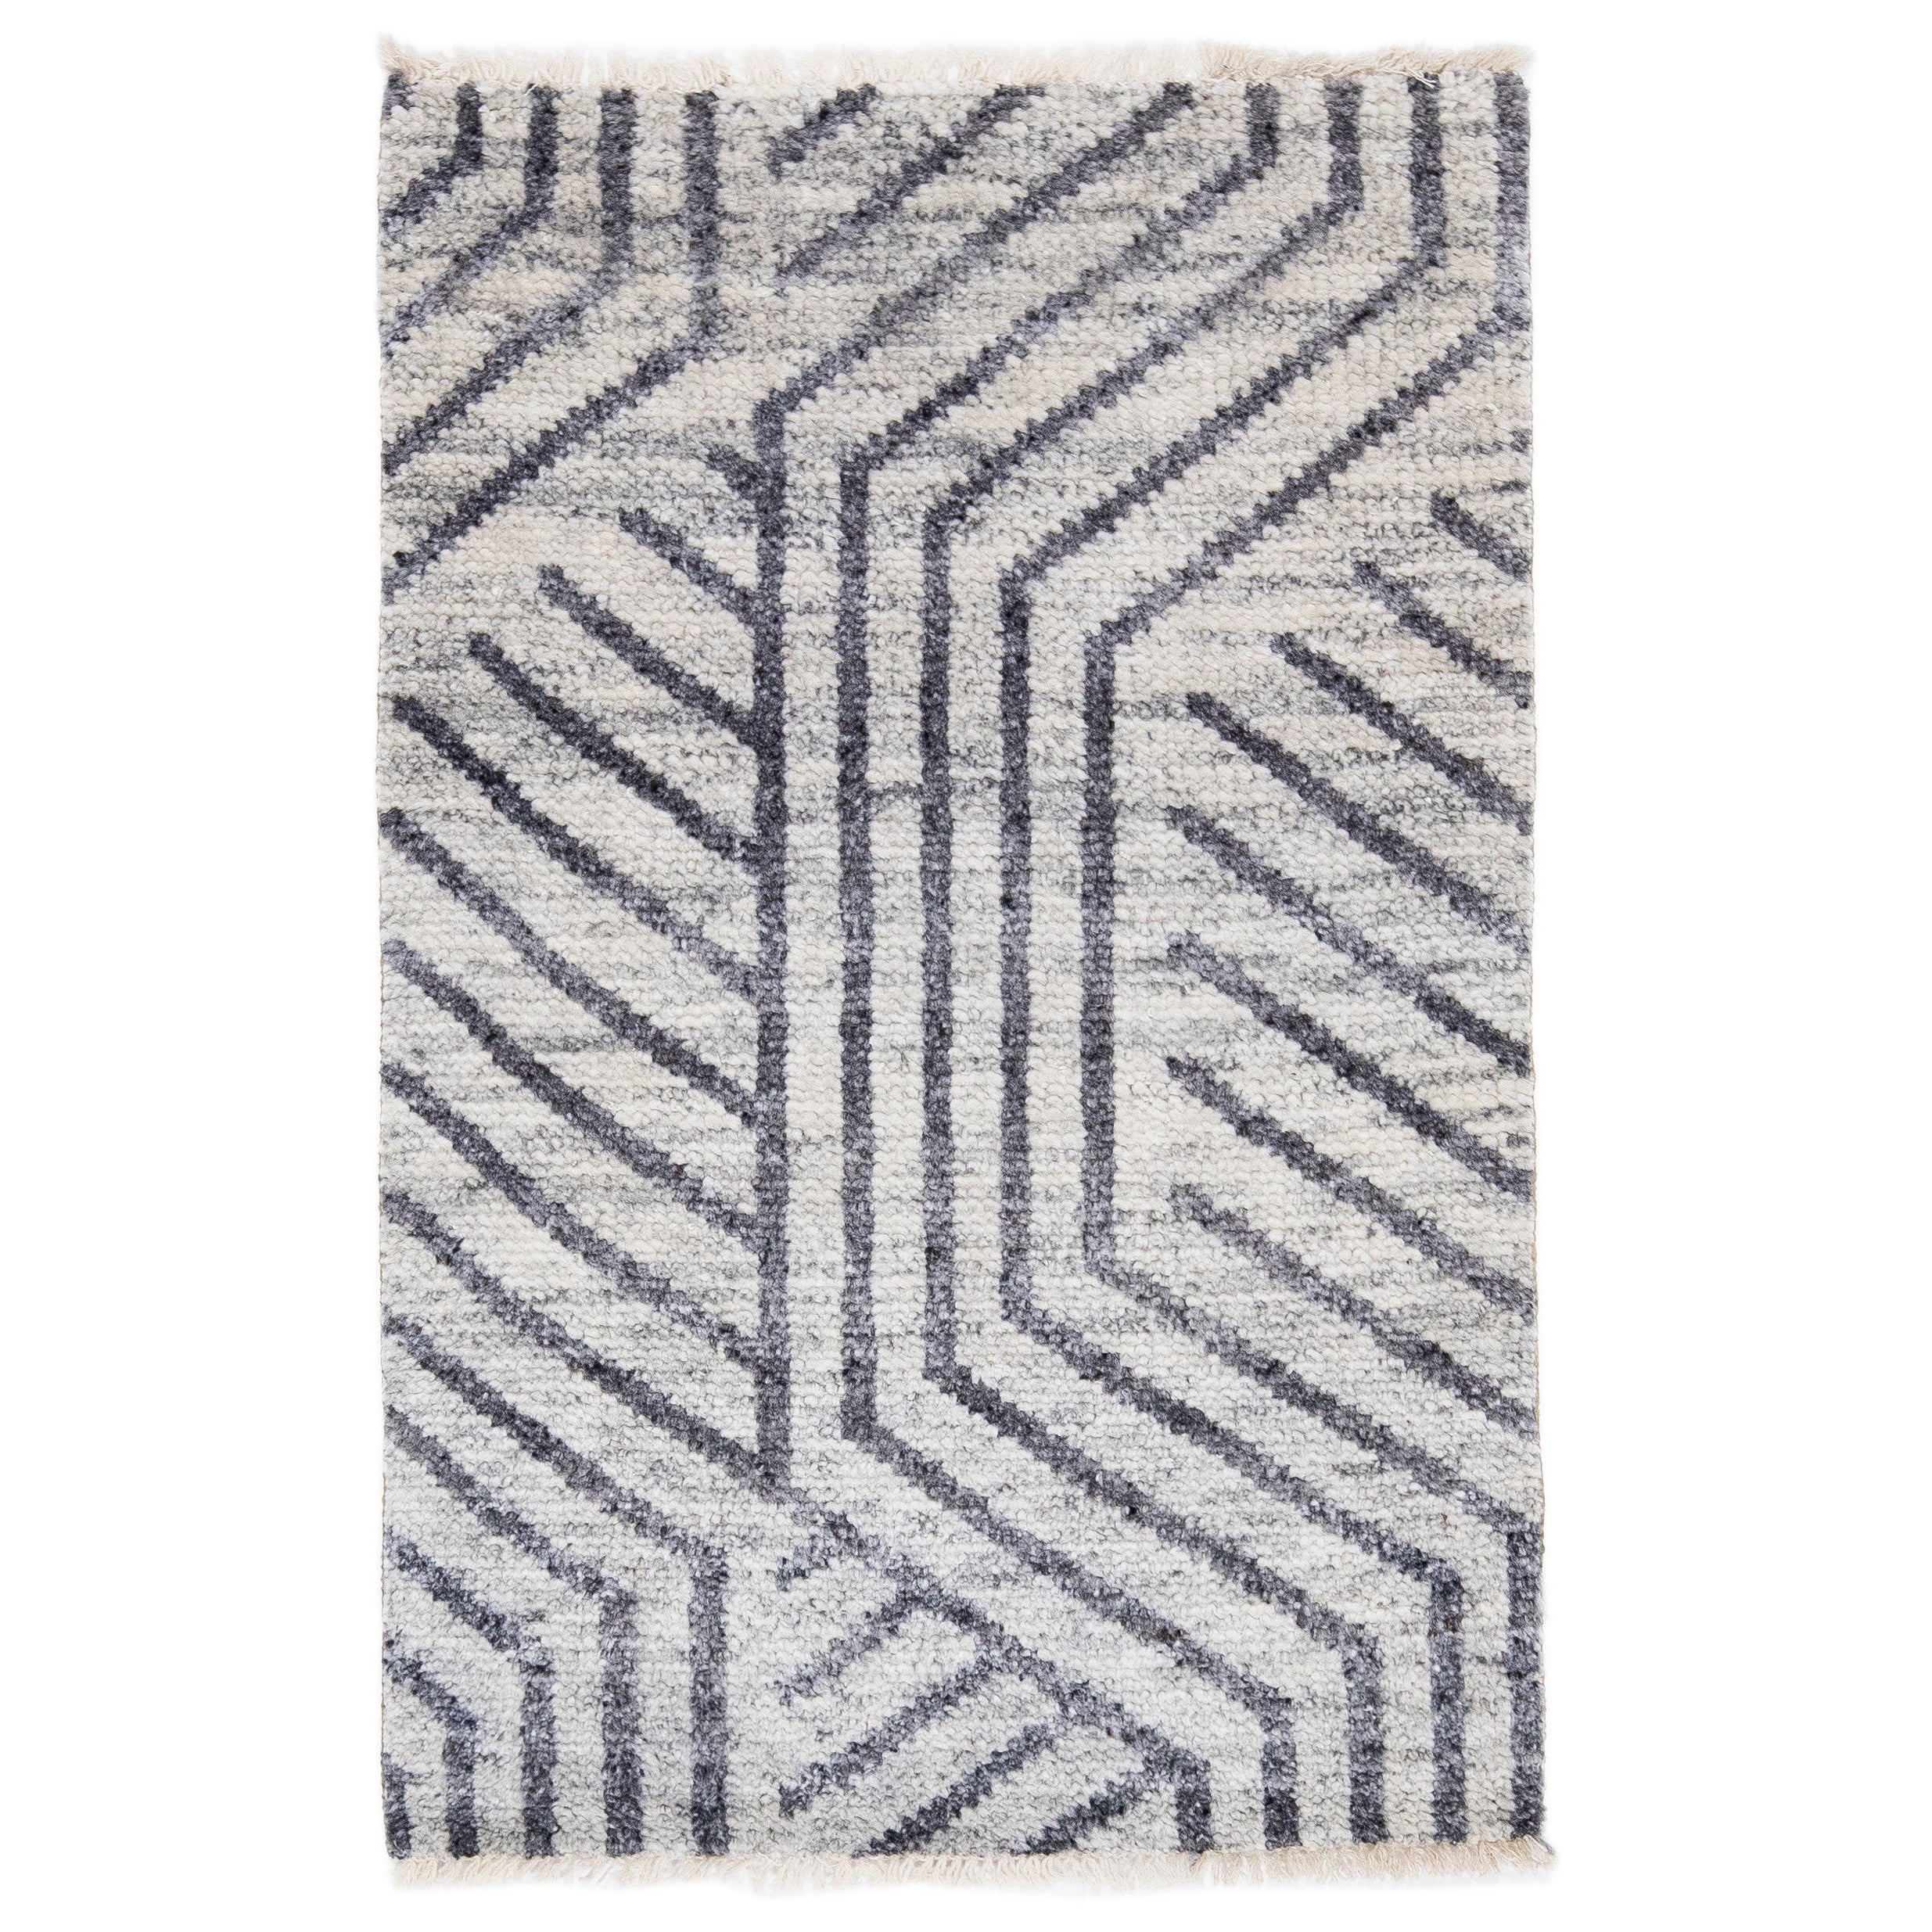 Moderner moderner handgefertigter grauer geometrischer Teppich aus Wolle und Baumwolle